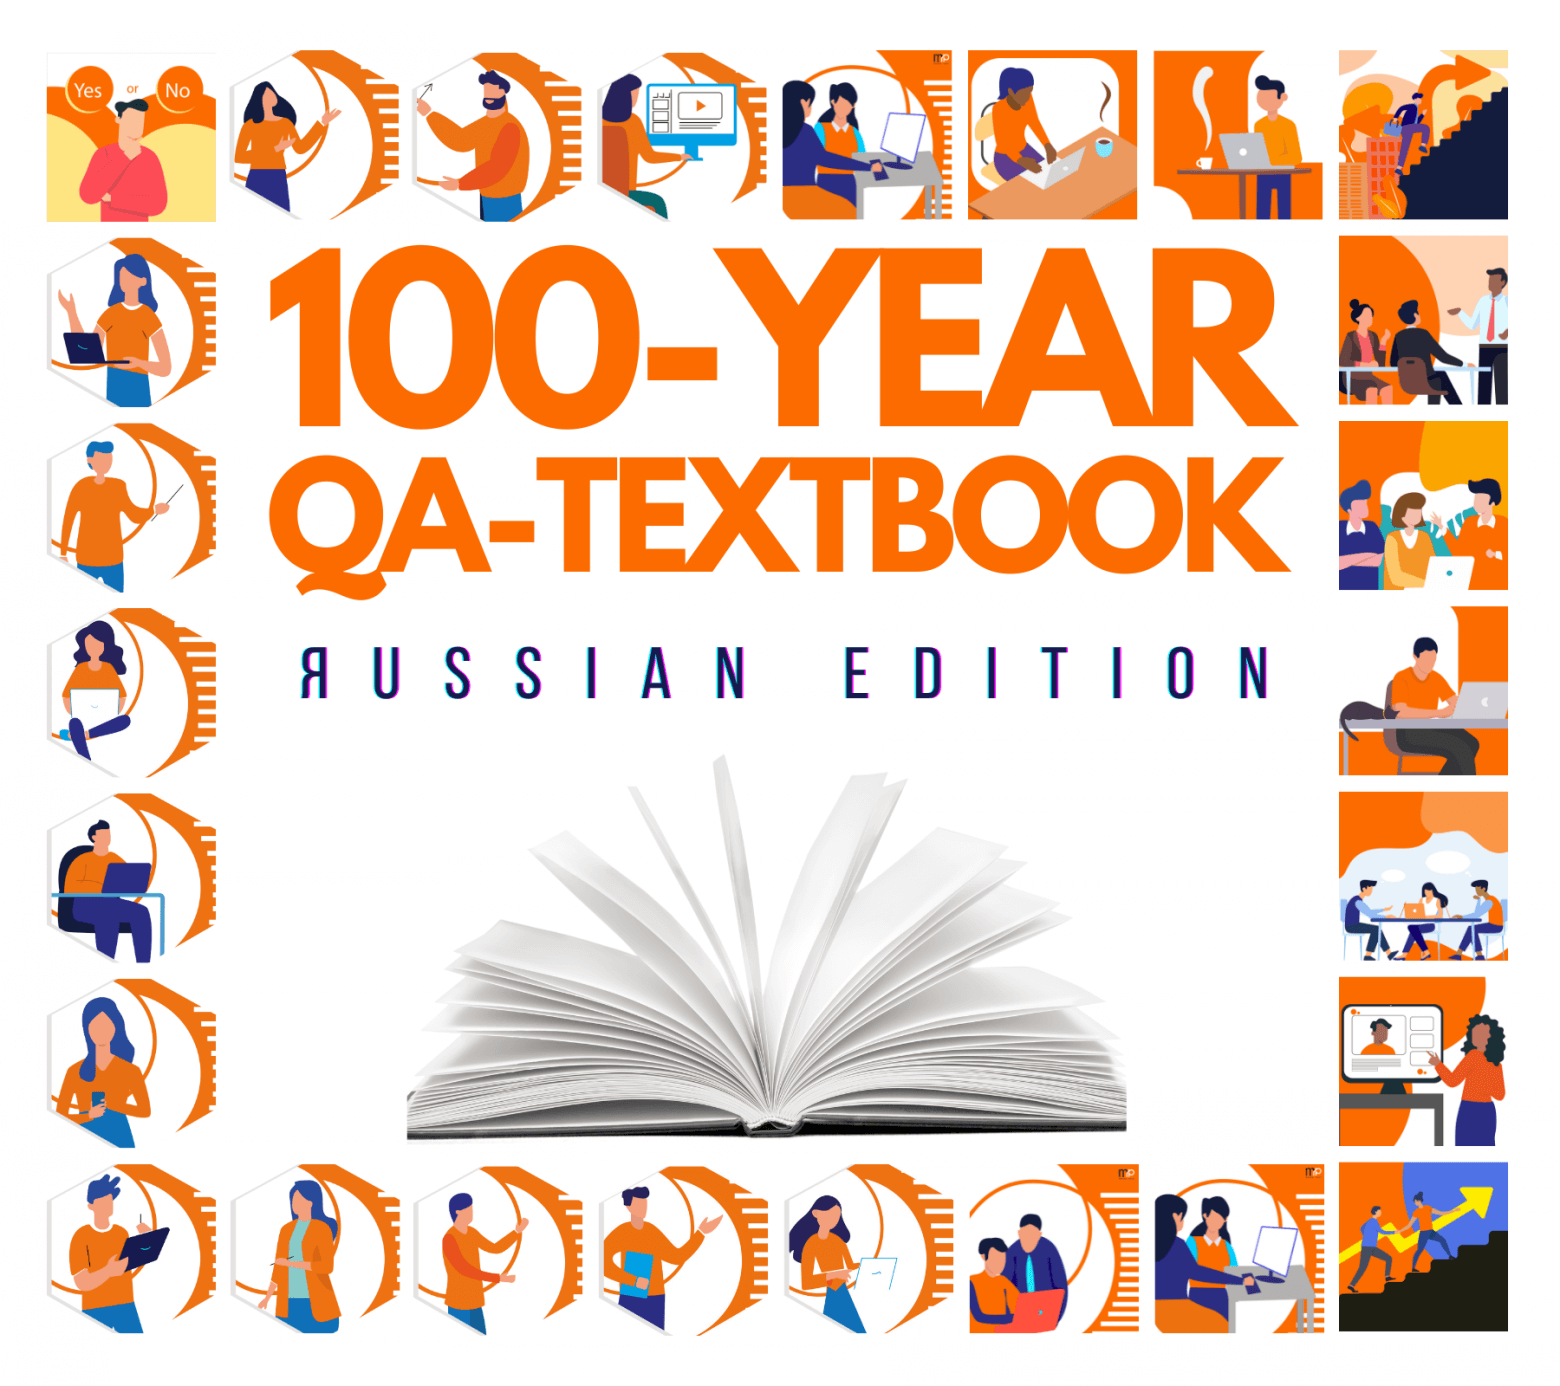 Обложка русской версии «100-years QA-textbook»